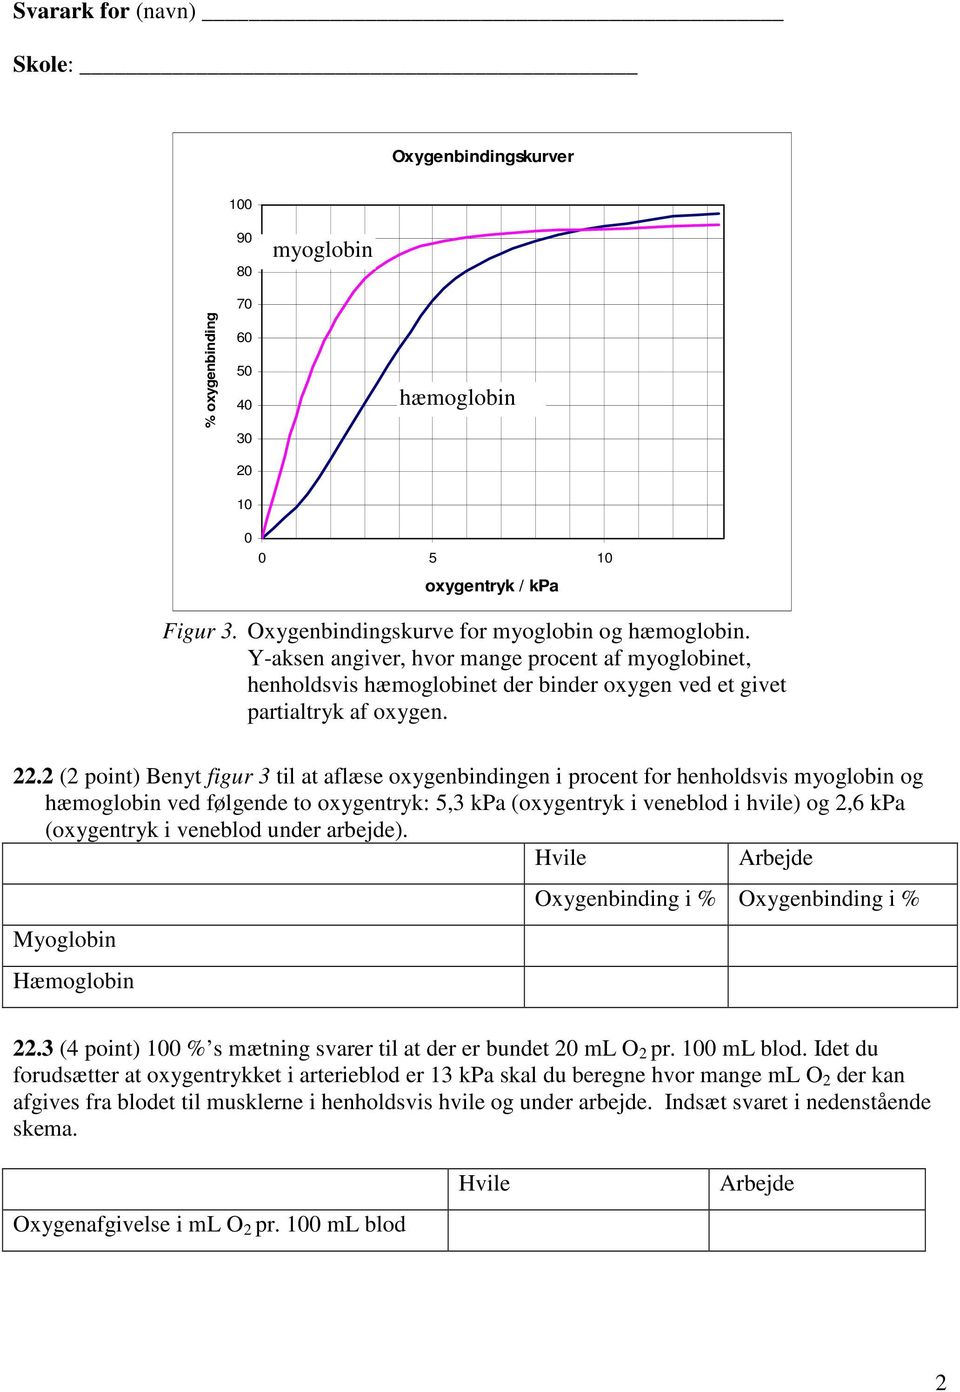 2 (2 point) Benyt figur 3 til at aflæse oxygenbindingen i procent for henholdsvis myoglobin og hæmoglobin ved følgende to oxygentryk: 5,3 kpa (oxygentryk i veneblod i hvile) og 2,6 kpa (oxygentryk i